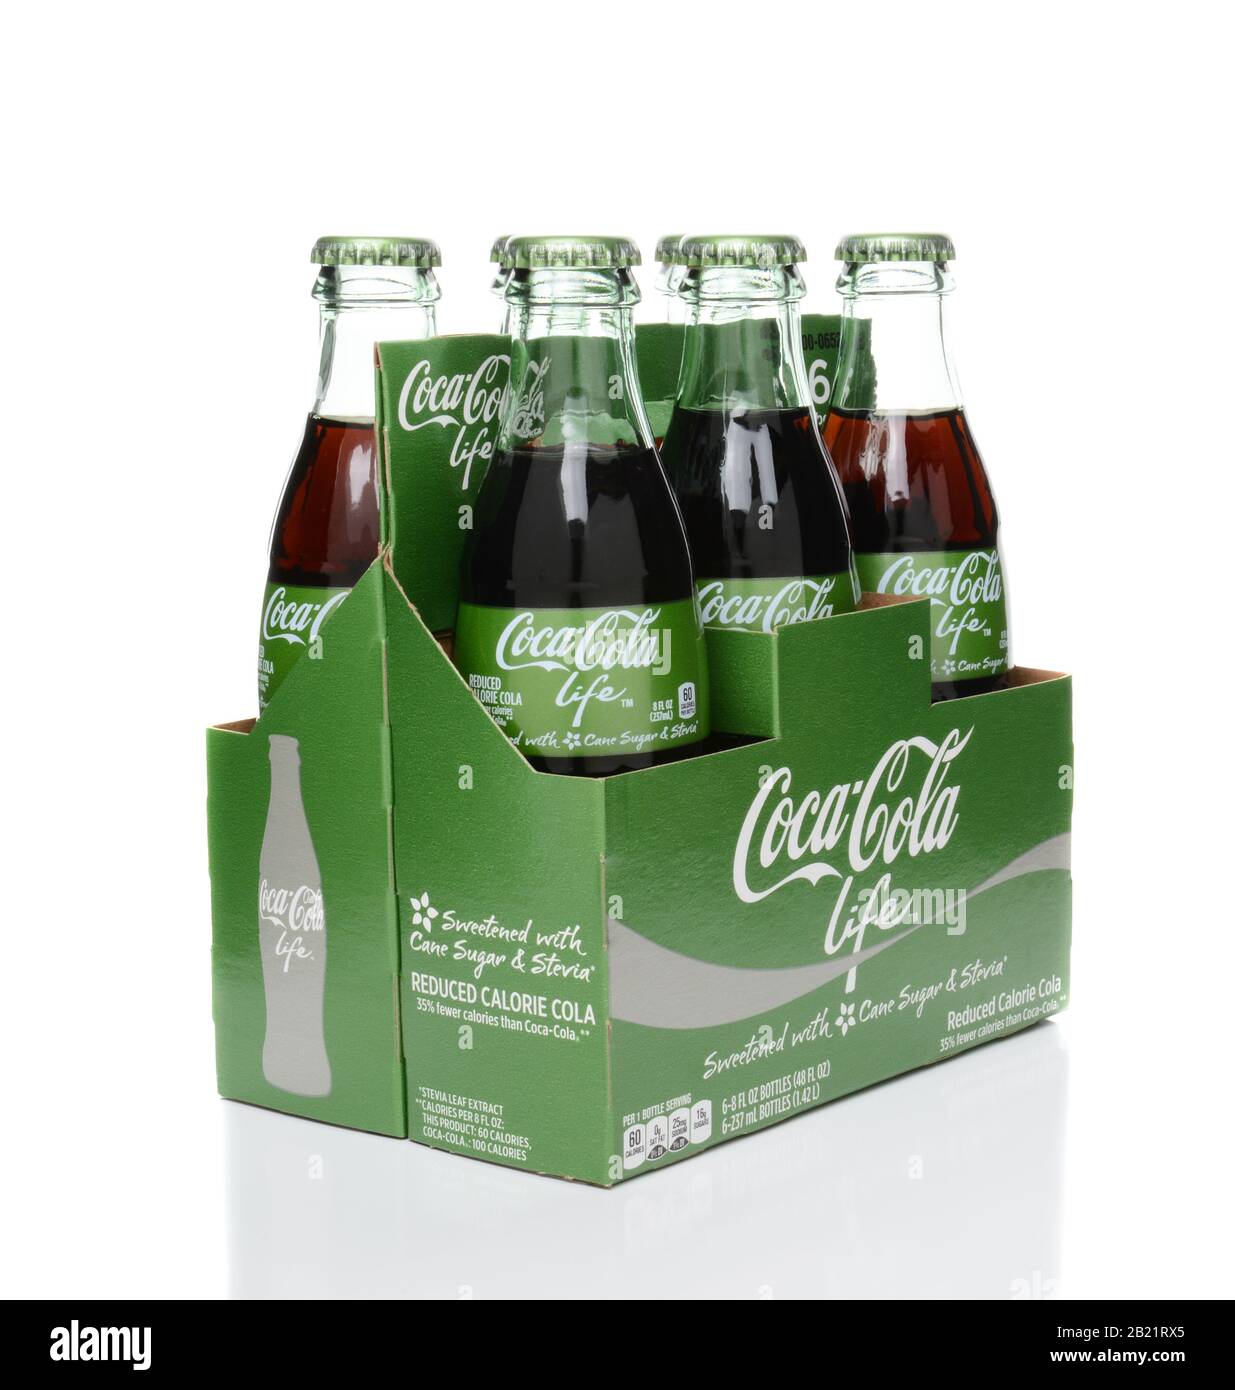 Irvine, CA - 15 FEBBRAIO 2015: 6 confezioni di bottiglie Coca-Cola Life. Una bevanda analcolica a ridotto contenuto calorico addolcita con zucchero di canna e Stevia, contenente il 60% di Foto Stock